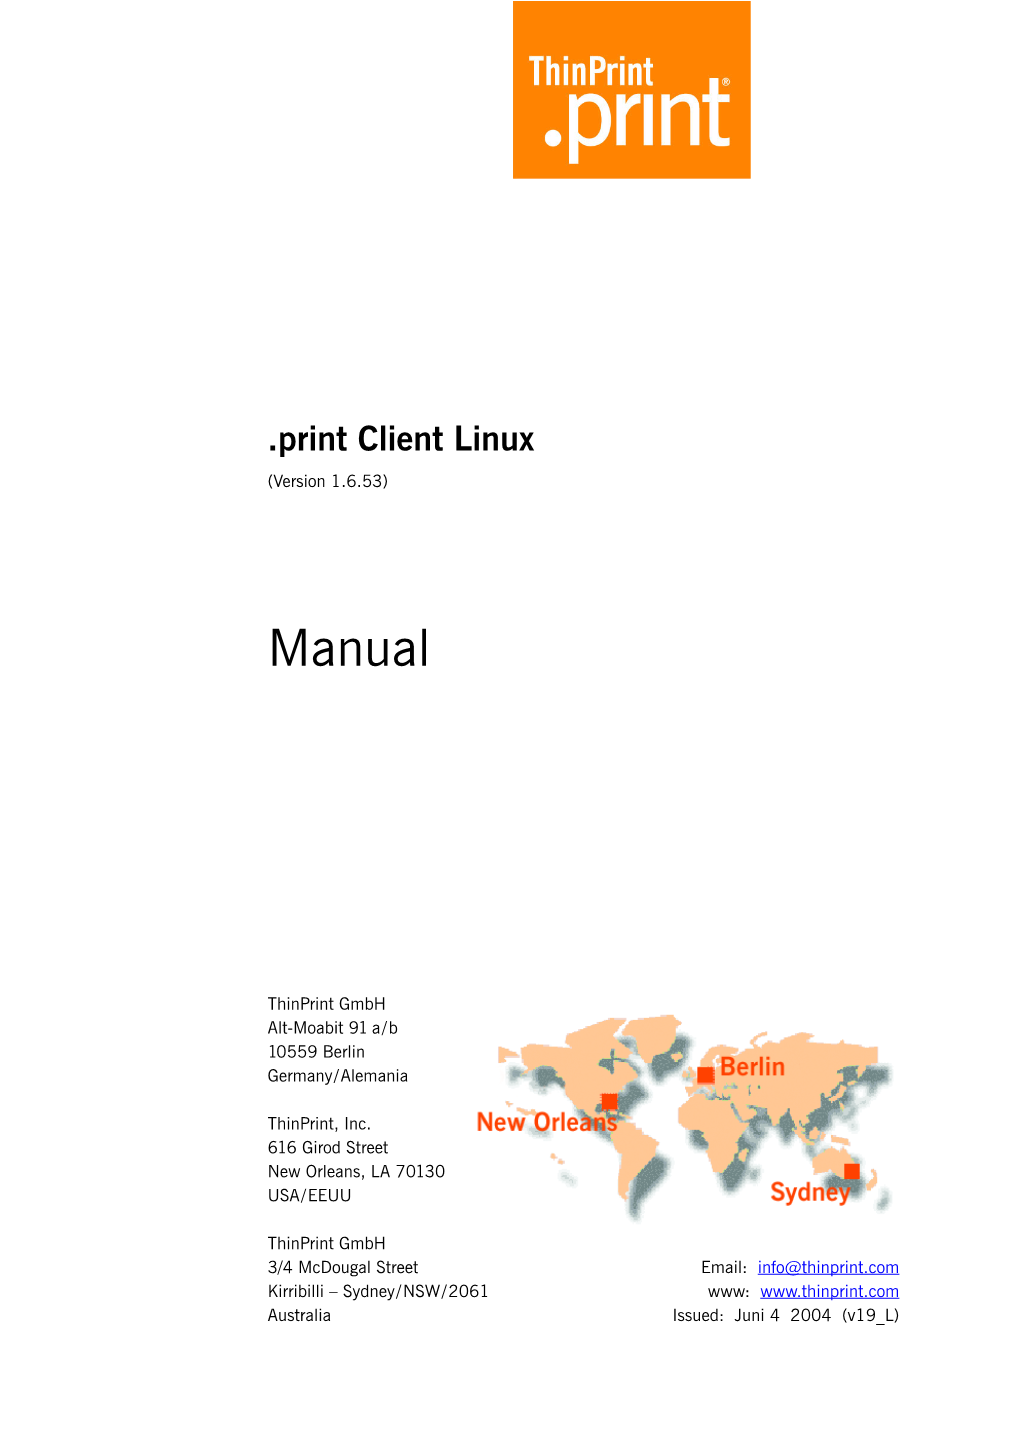 Print Client Linux/Solaris